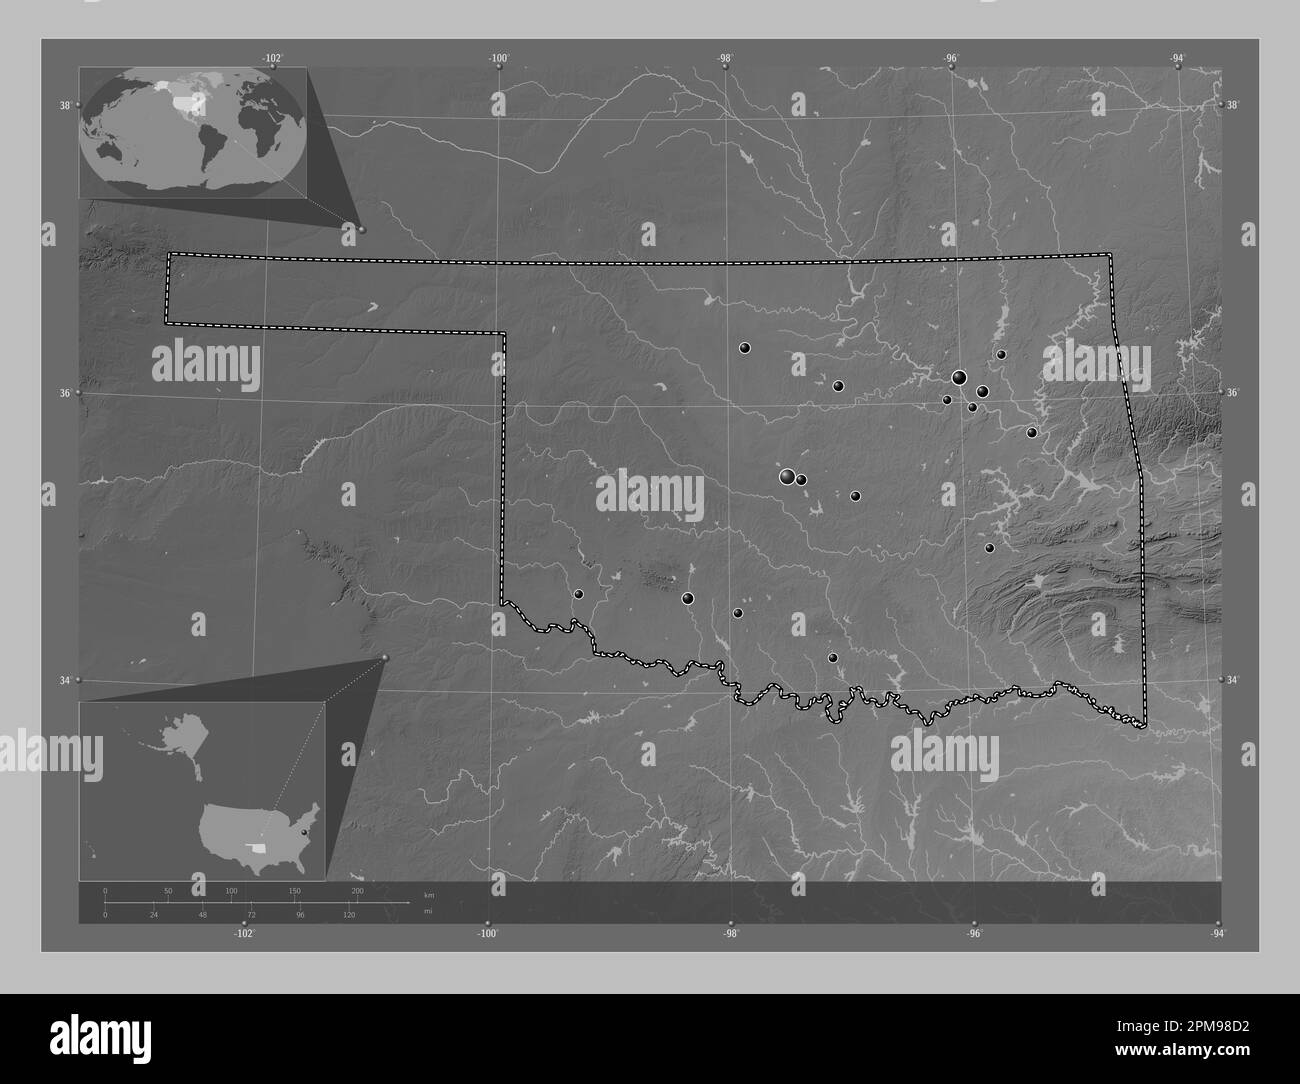 Oklahoma, stato degli Stati Uniti d'America. Mappa in scala di grigi con laghi e fiumi. Posizioni delle principali città della regione. Angolo ausiliario Foto Stock